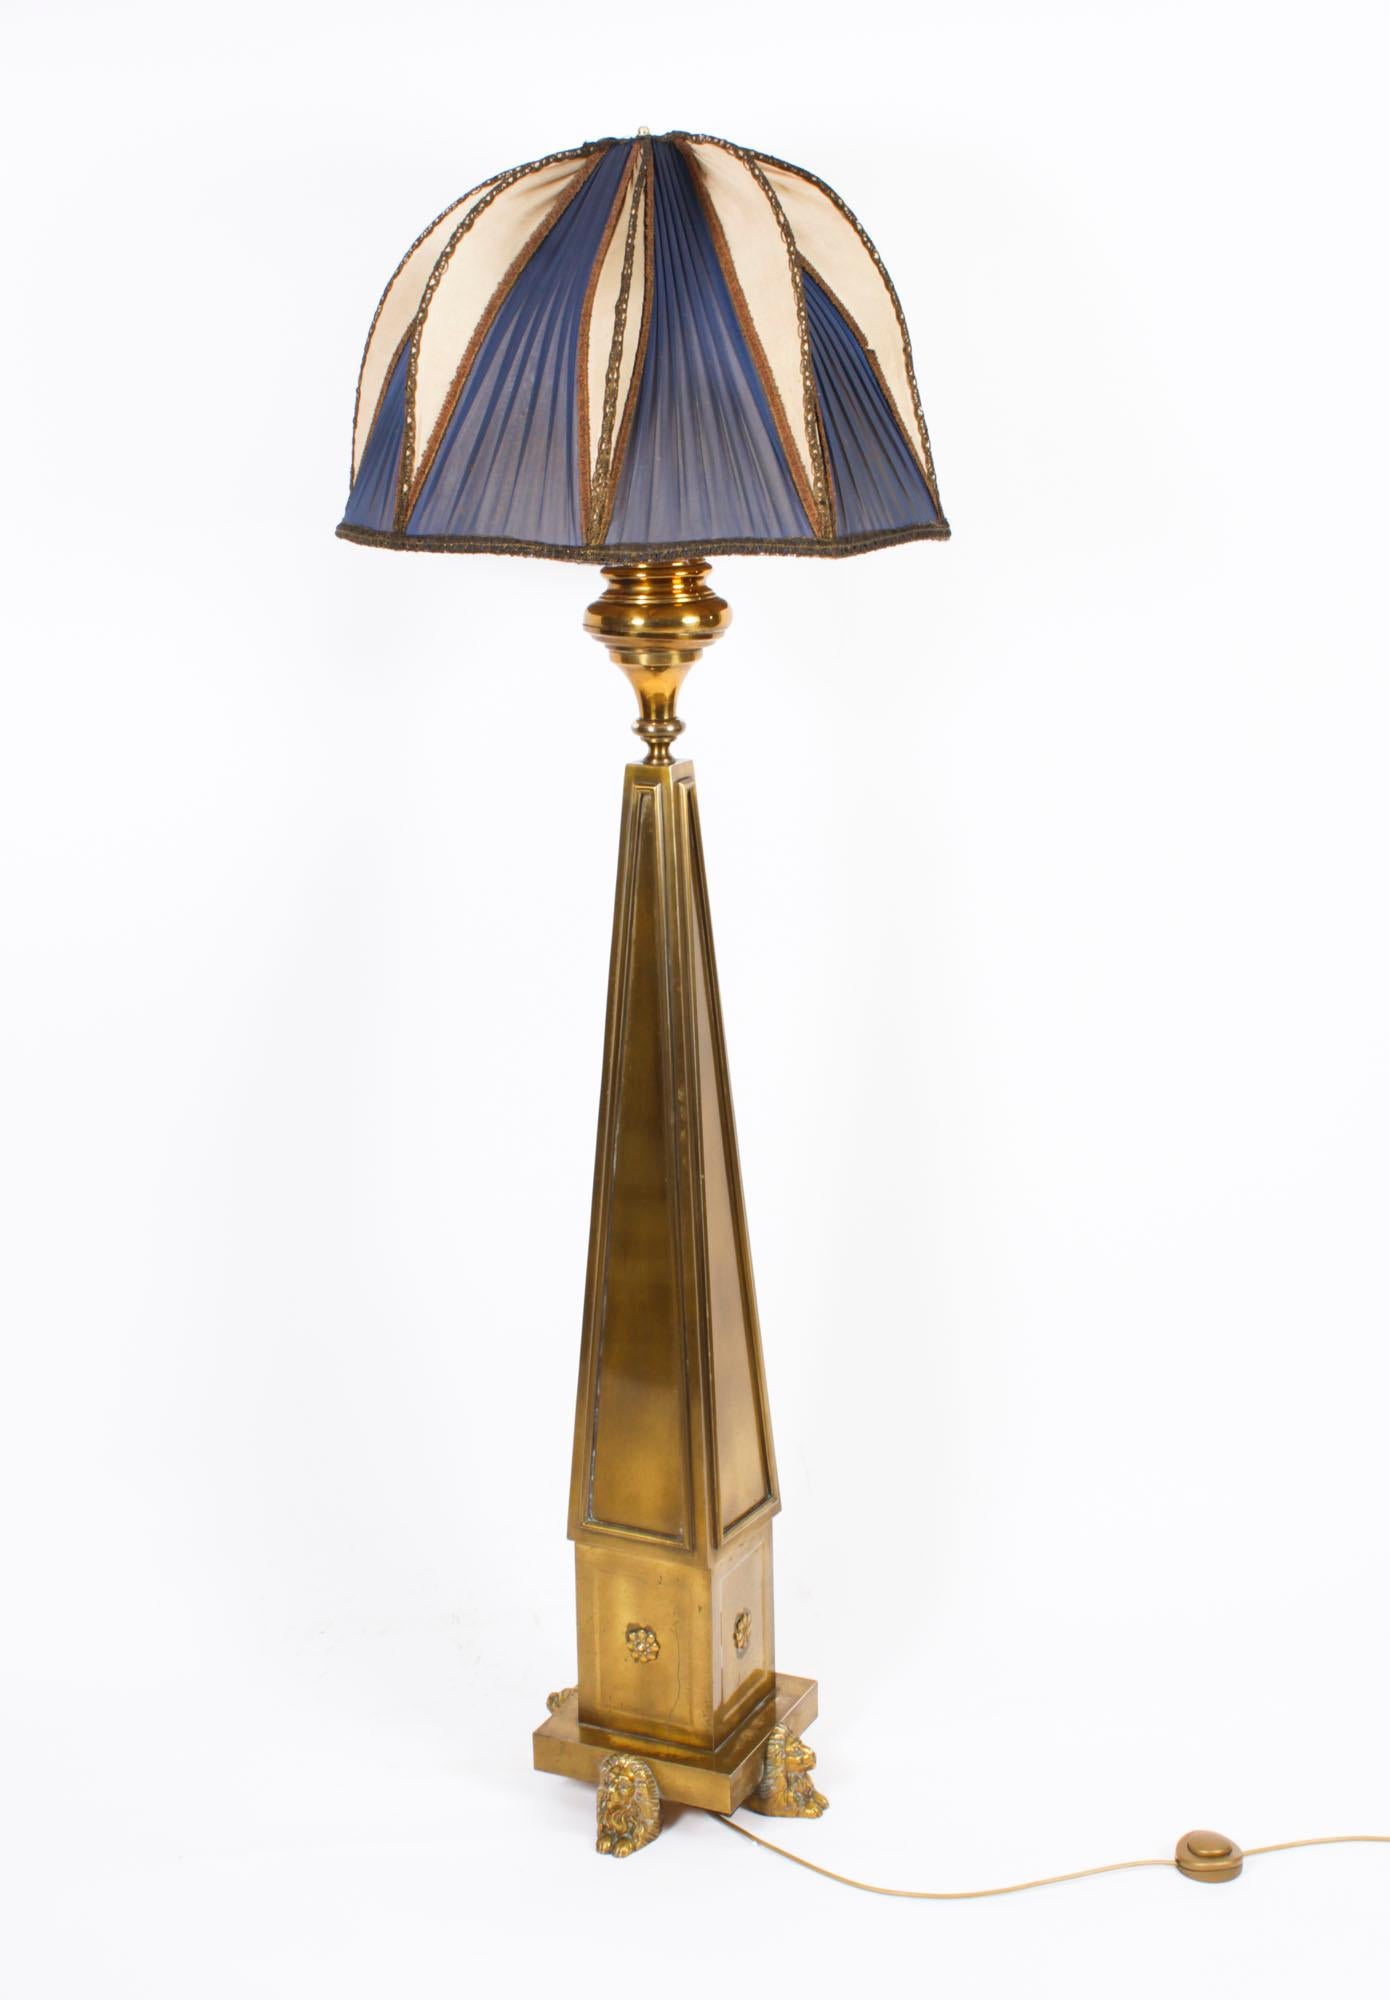 Il s'agit d'une lampe standard et d'un abat-jour en laiton et en bronze doré, de très belle qualité et d'une qualité d'exposition antique de l'Arte Antiques,  Circa 1920 en date.

Cette lampe splendide présente une colonne distinguée avec quatre